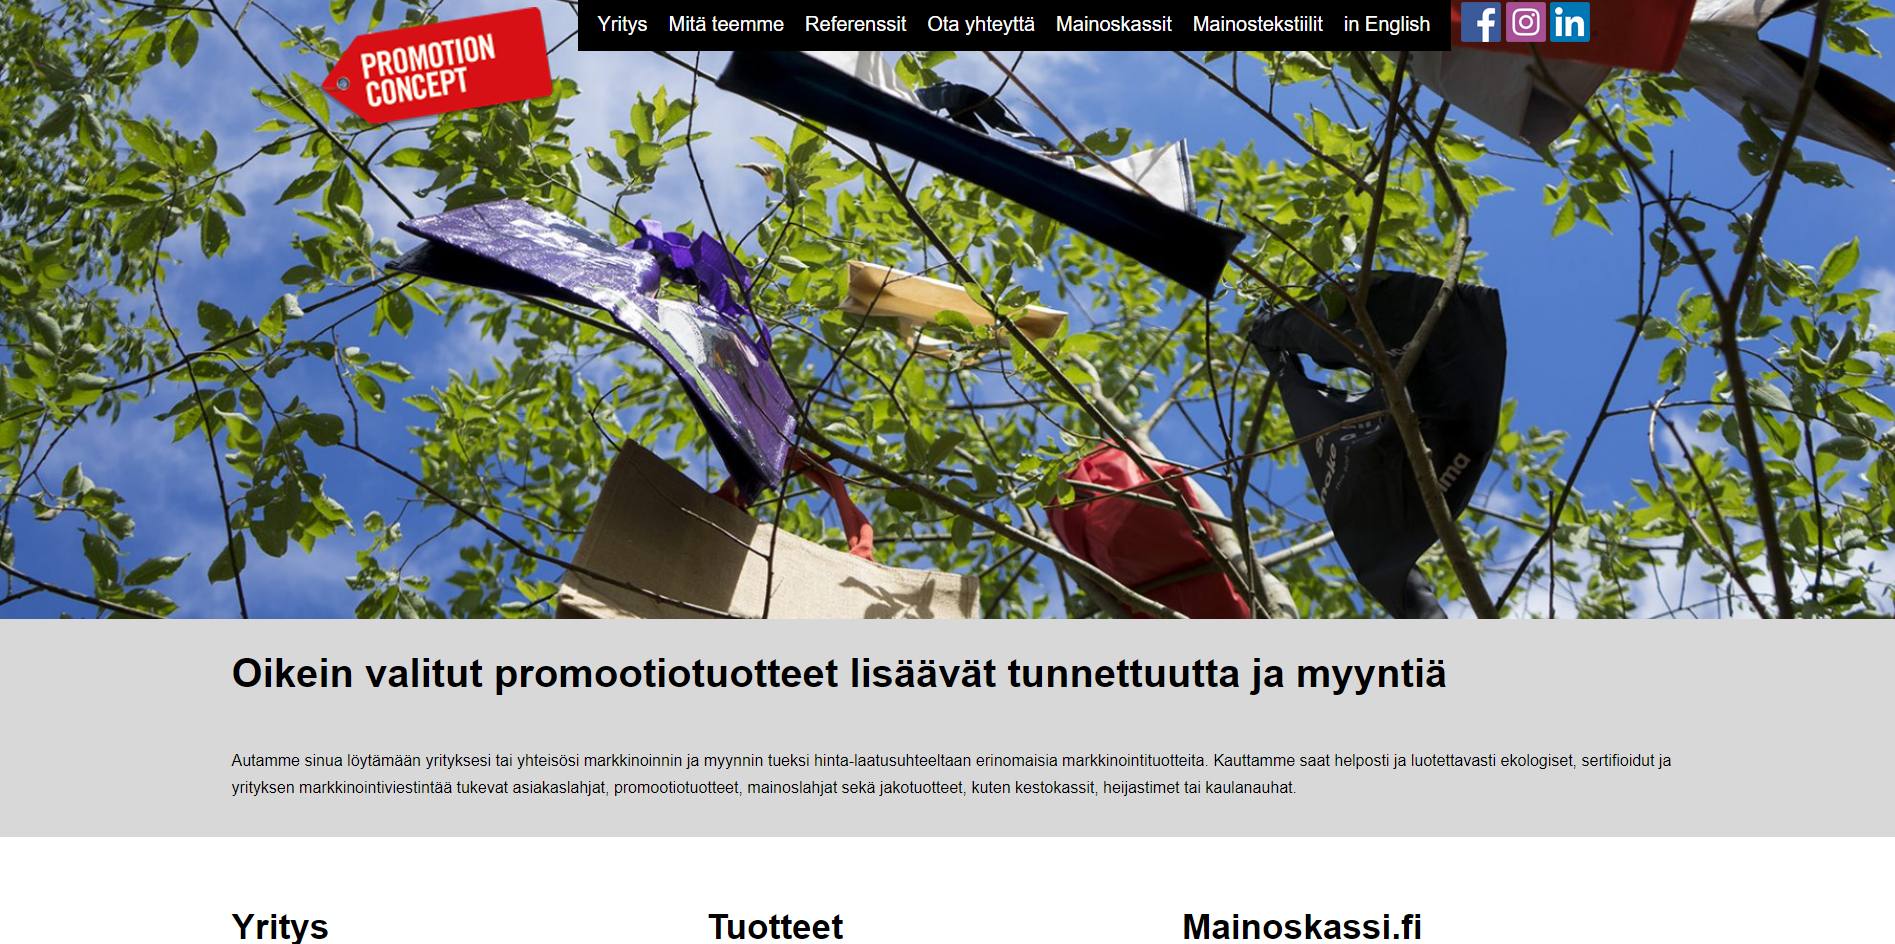 Promotionconcept.fi website header image